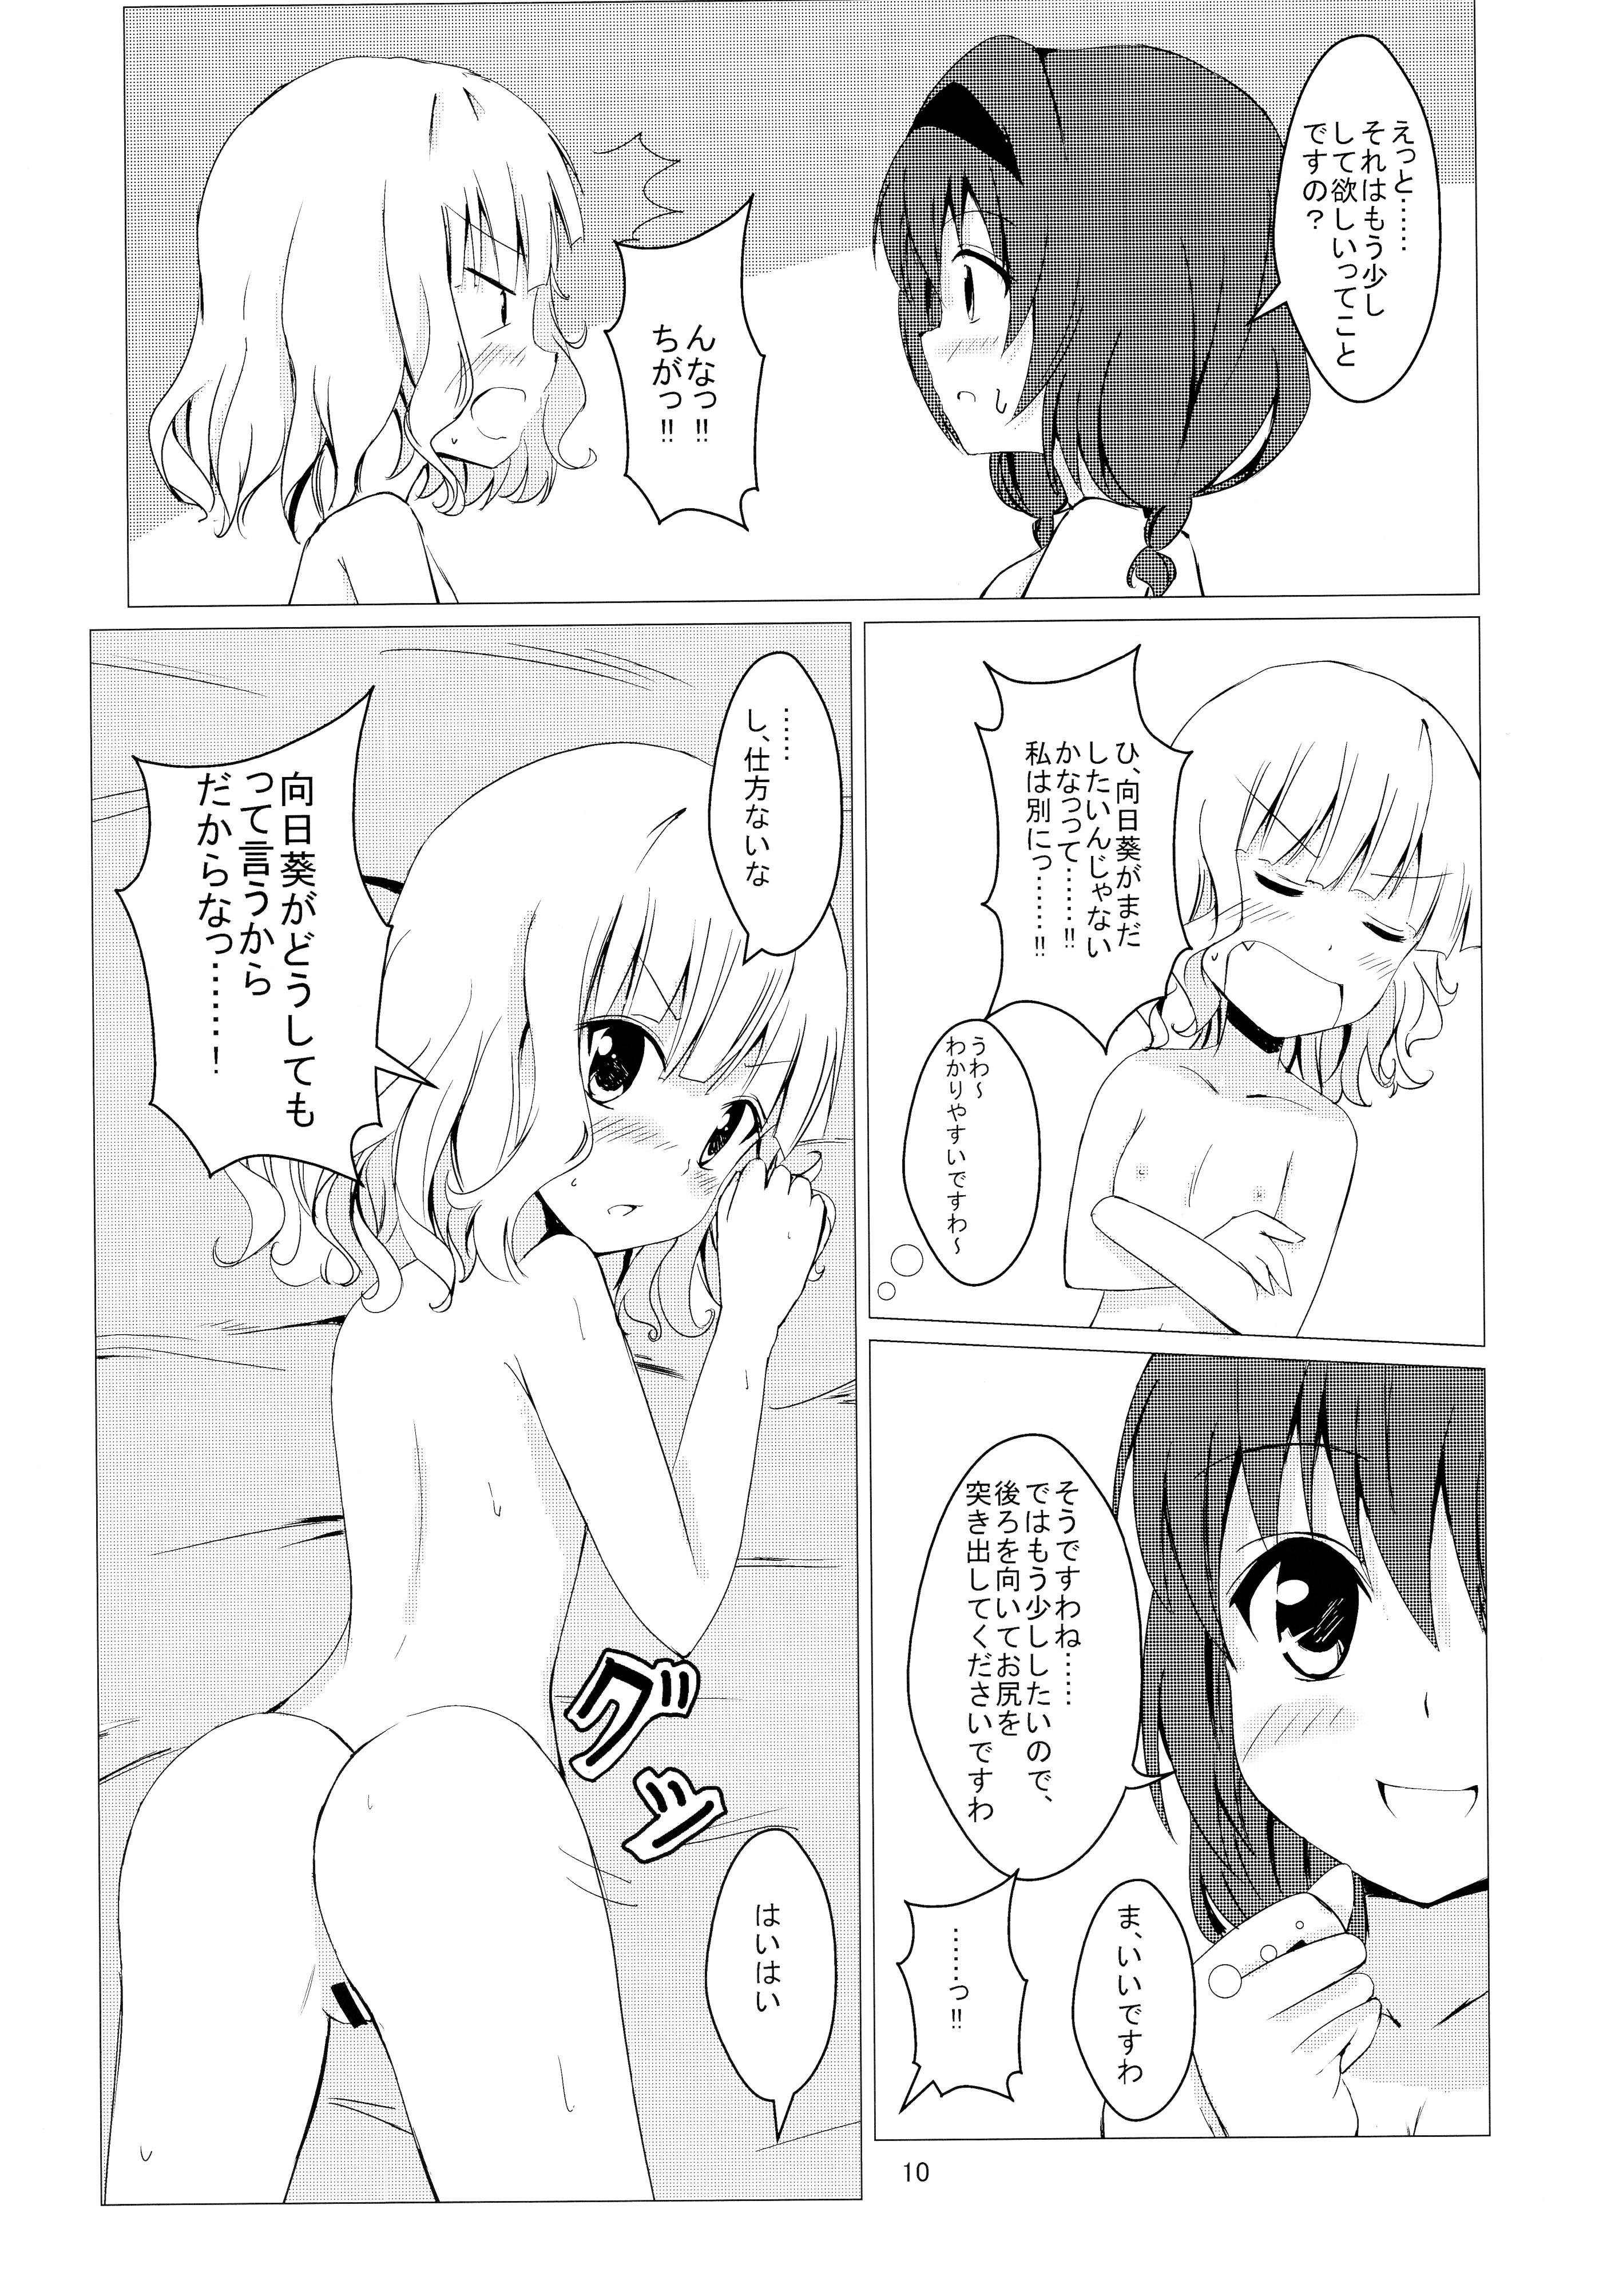 4some Himasaku Ecchi 2 - Yuruyuri Swinger - Page 12